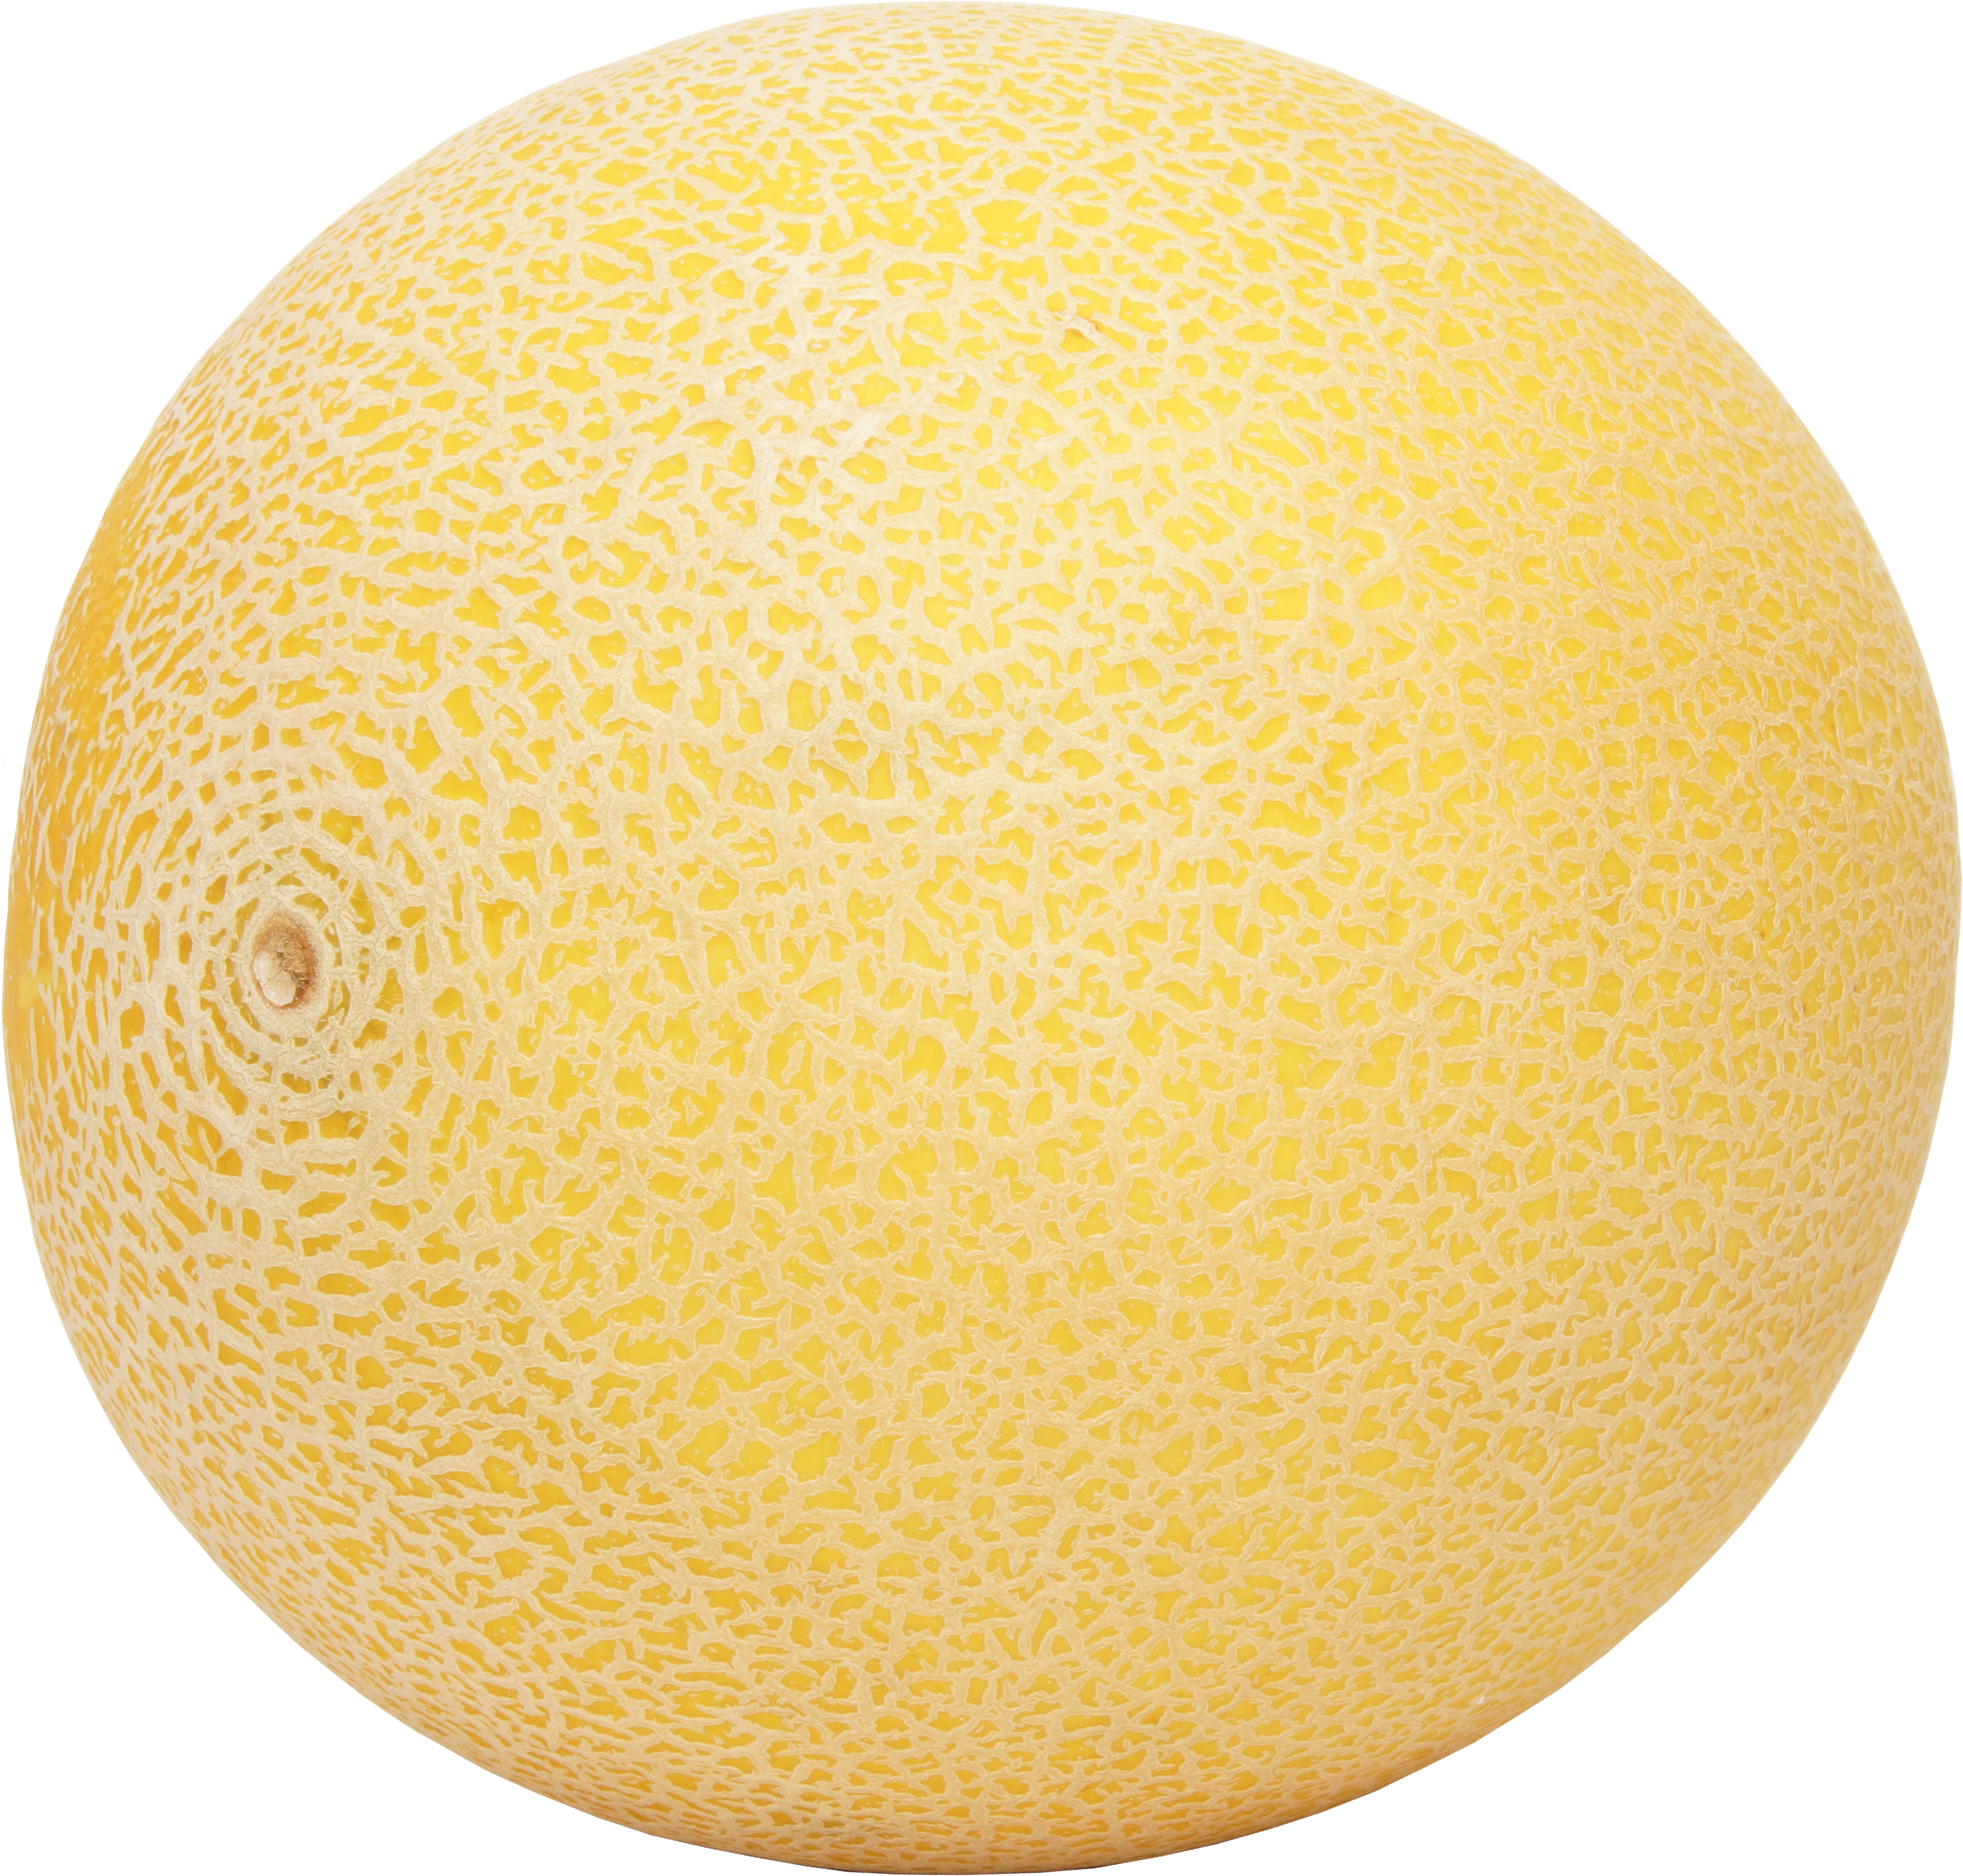 Cantaloup-Melone